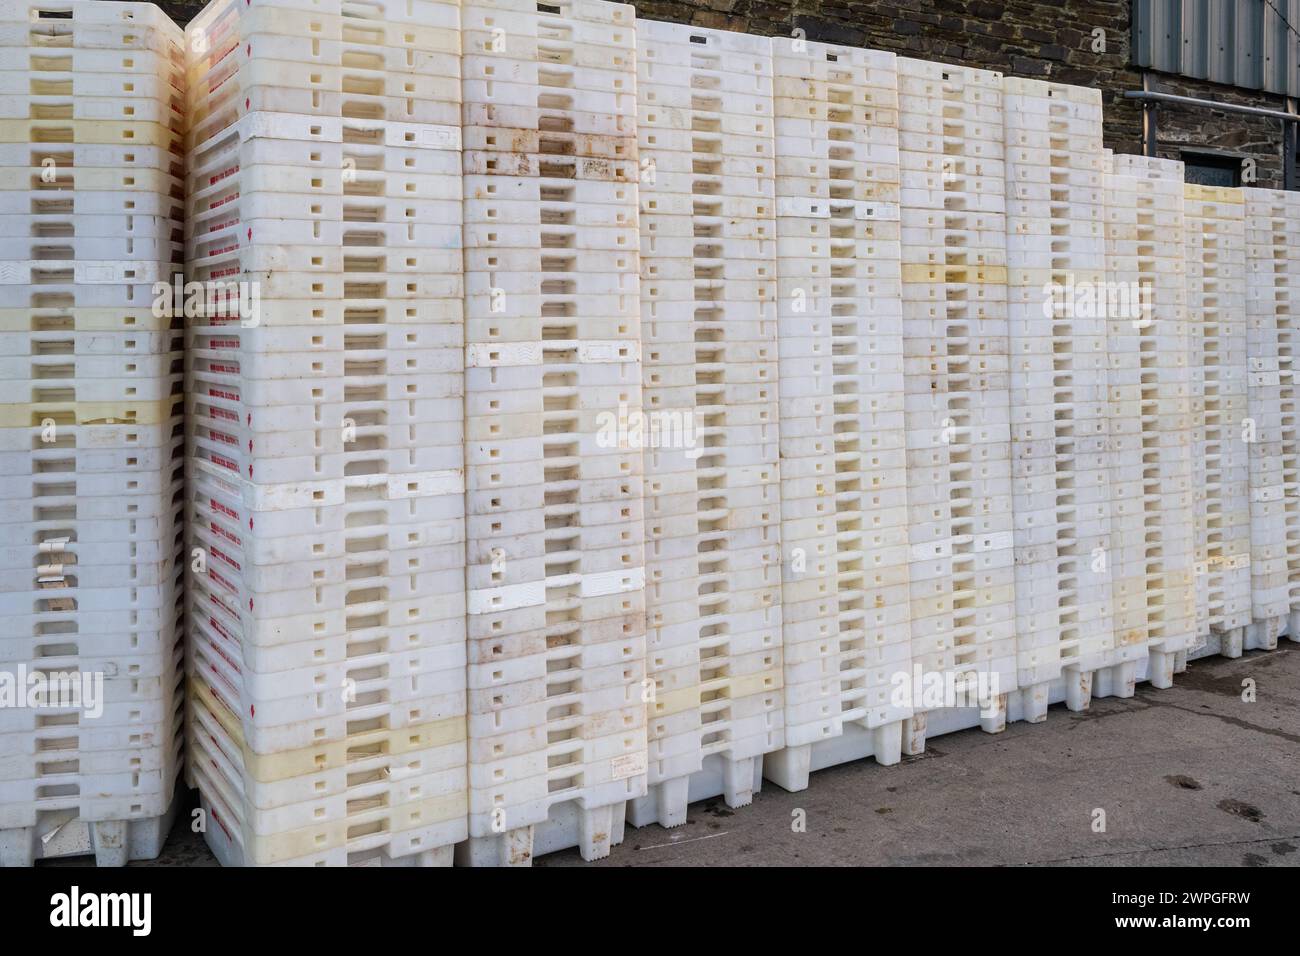 Boîtes à poissons empilées à l'extérieur d'une usine de poisson, Union Hall, West Cork, Irlande. Banque D'Images